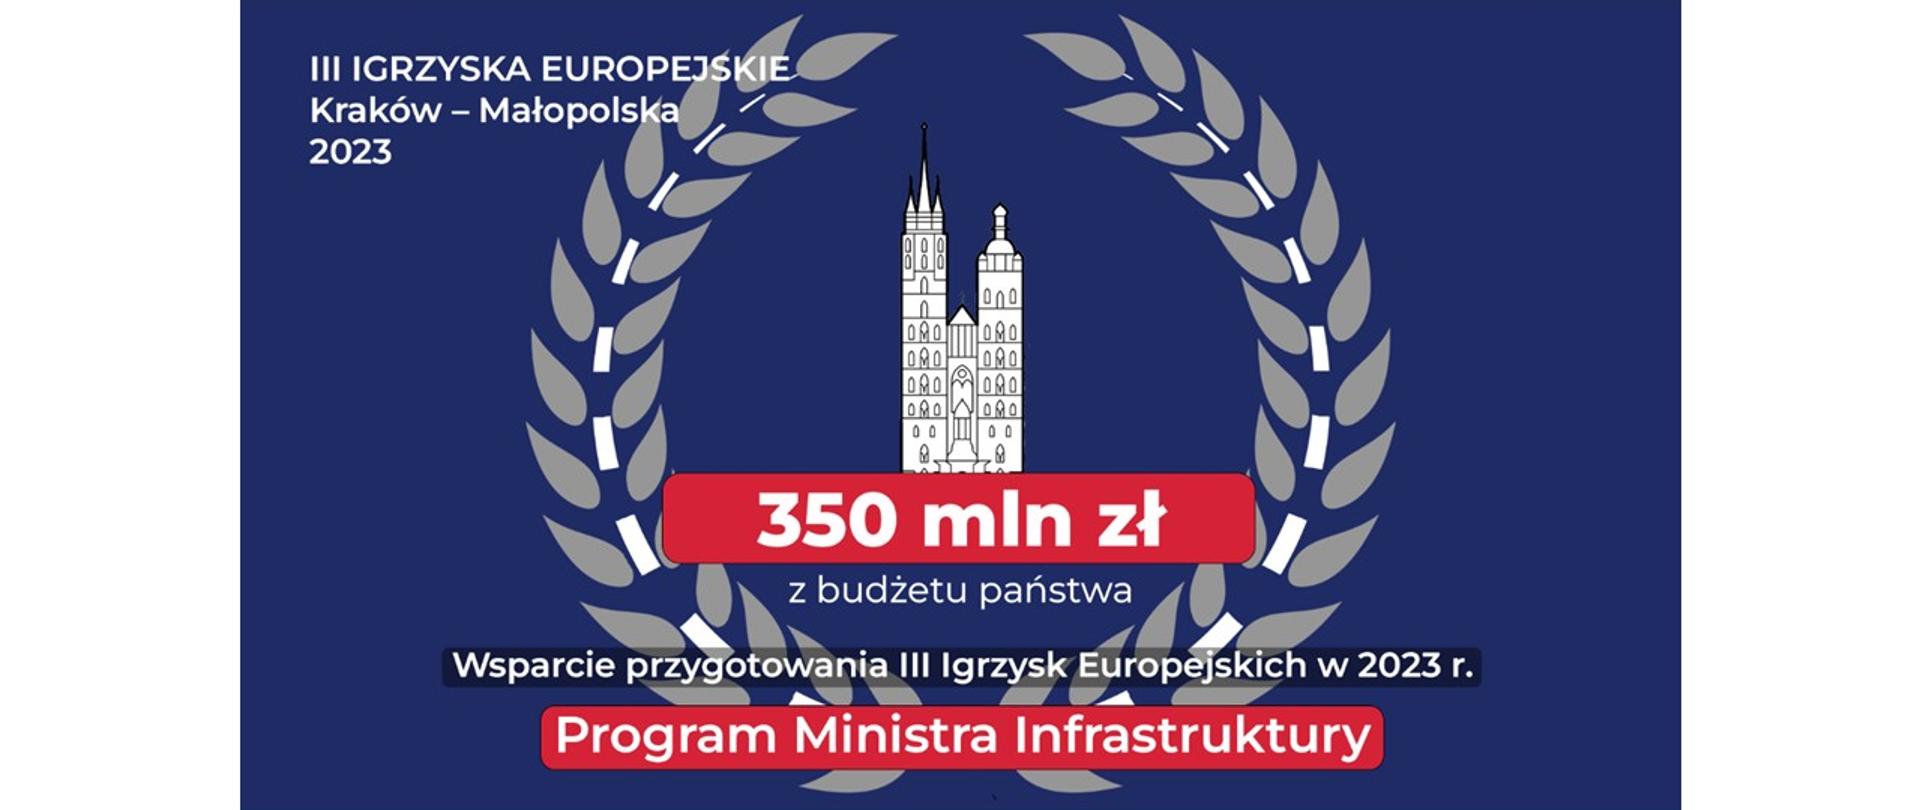 350 mln złotych na inwestycje w ramach Programu wsparcia przygotowań III Igrzysk Europejskich